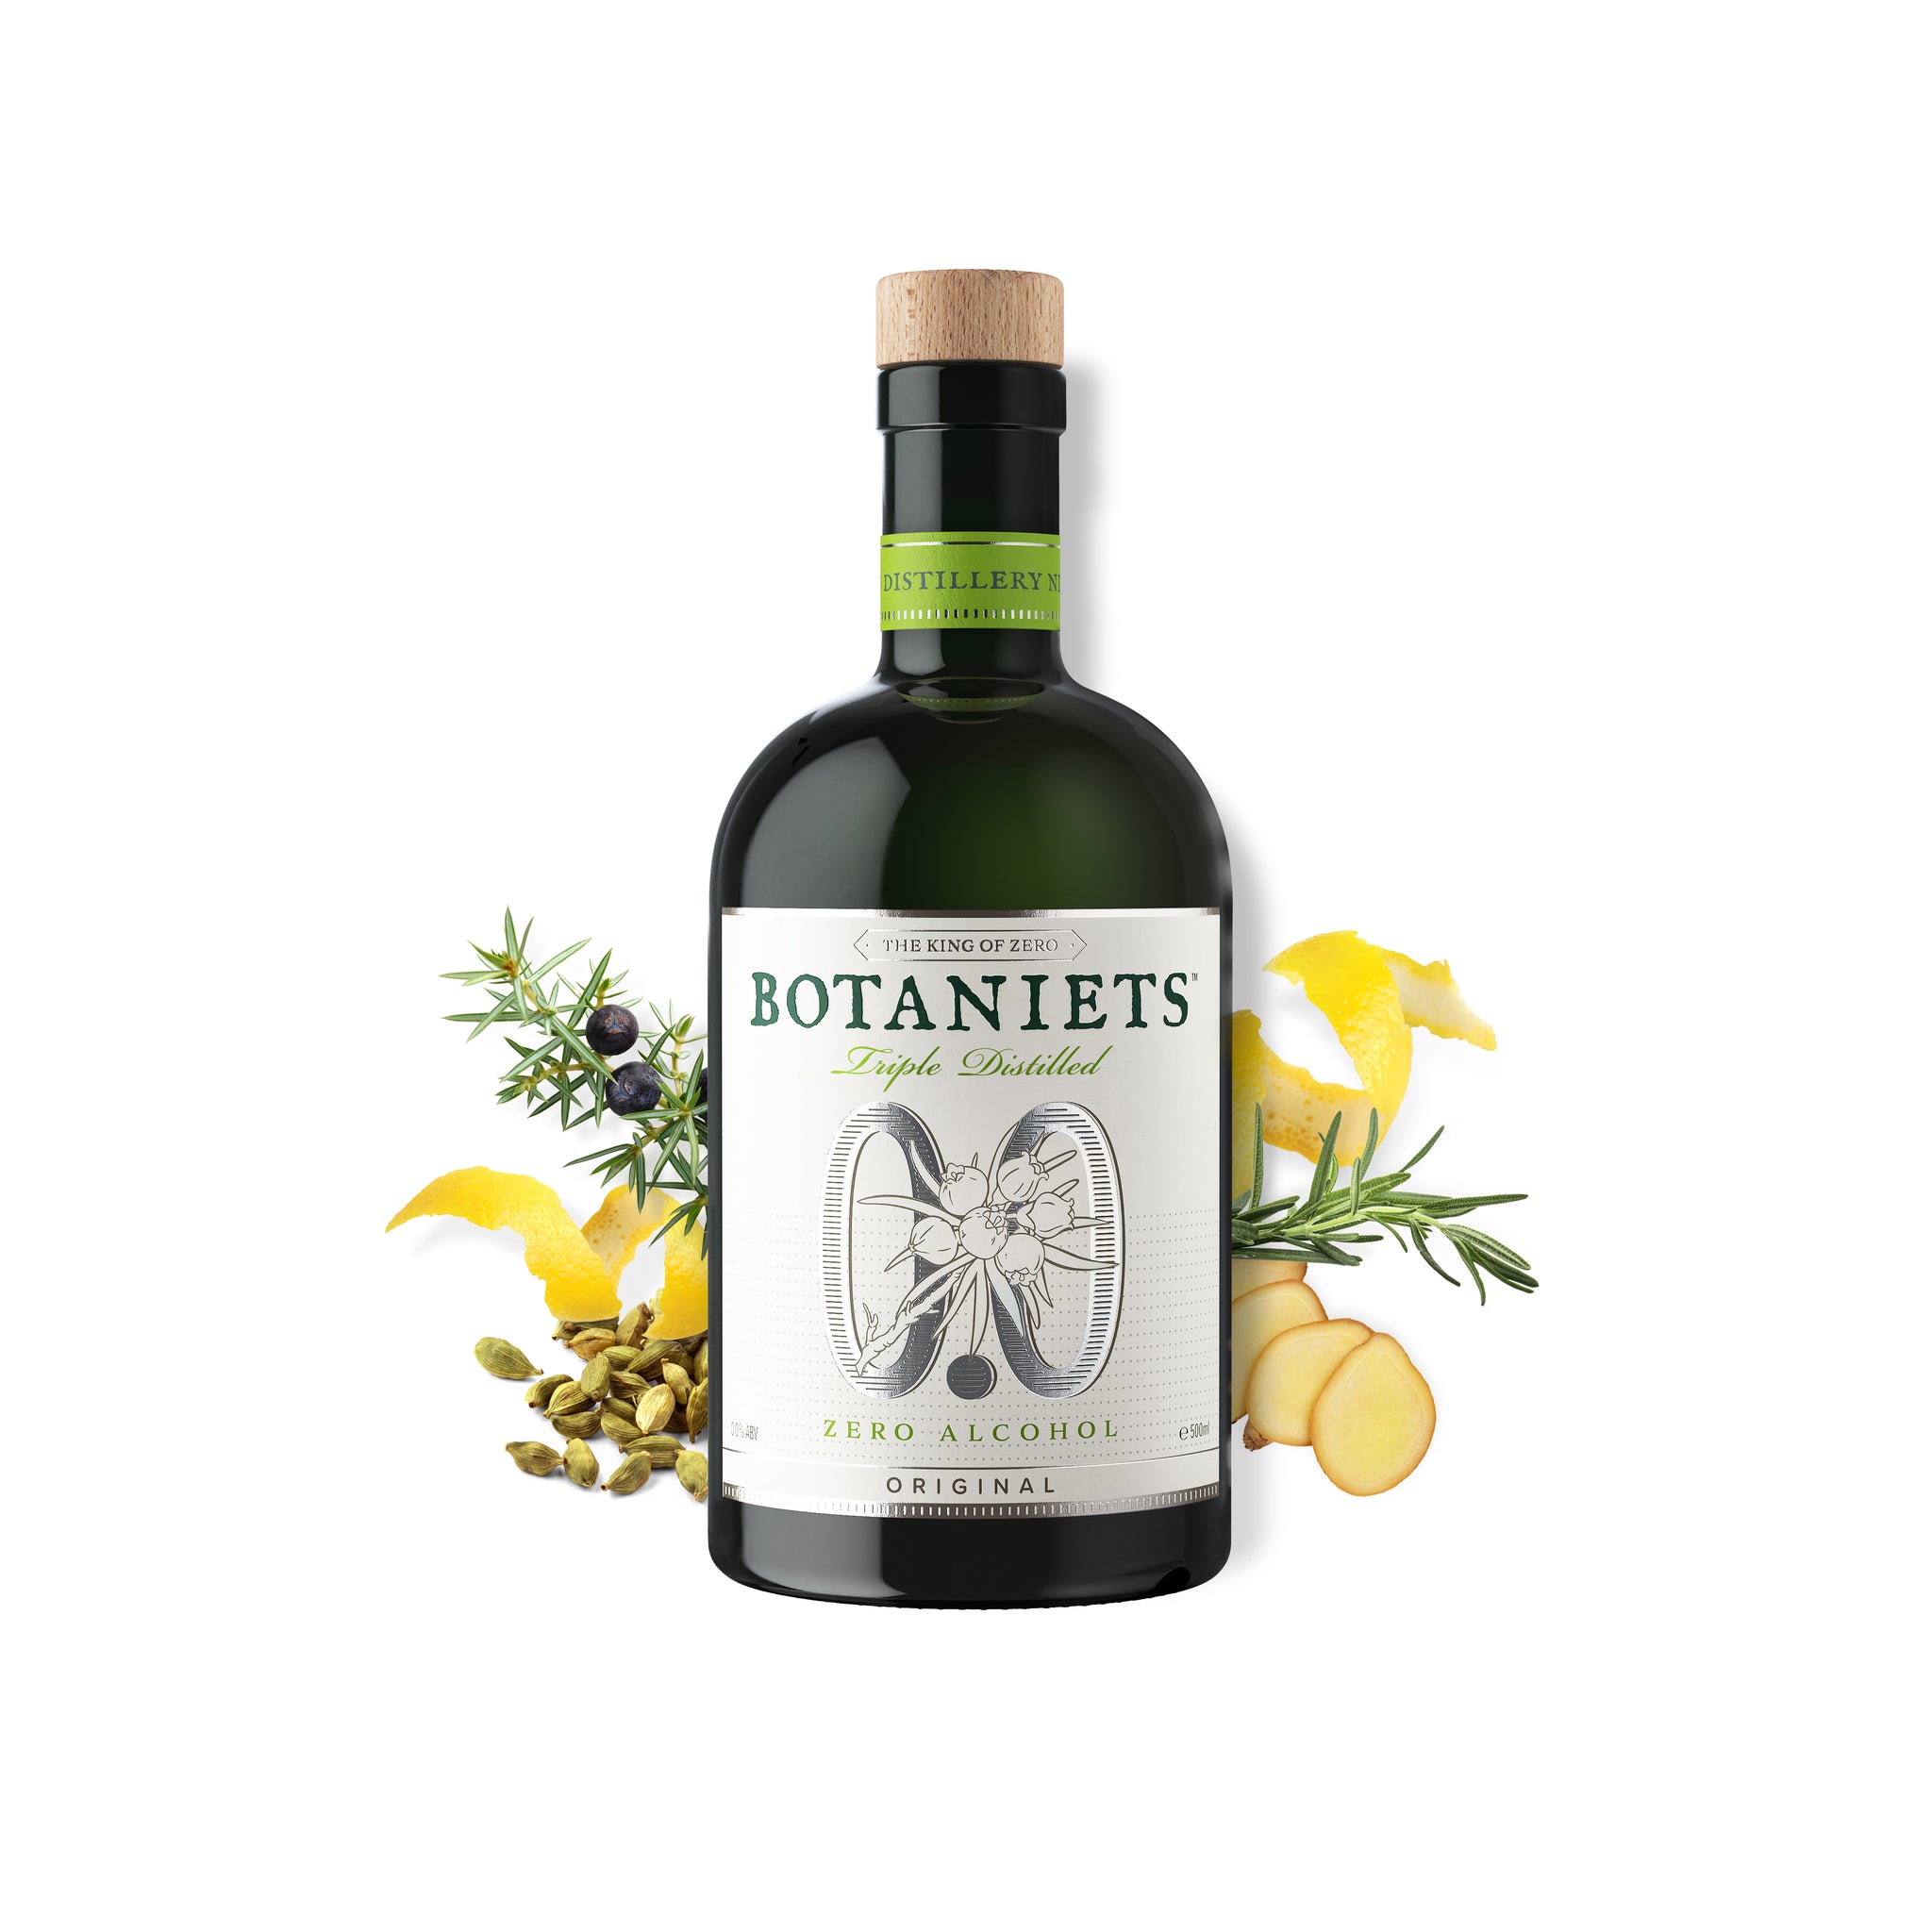 Botaniets Original, Triple Distilled Spirit 0.0%